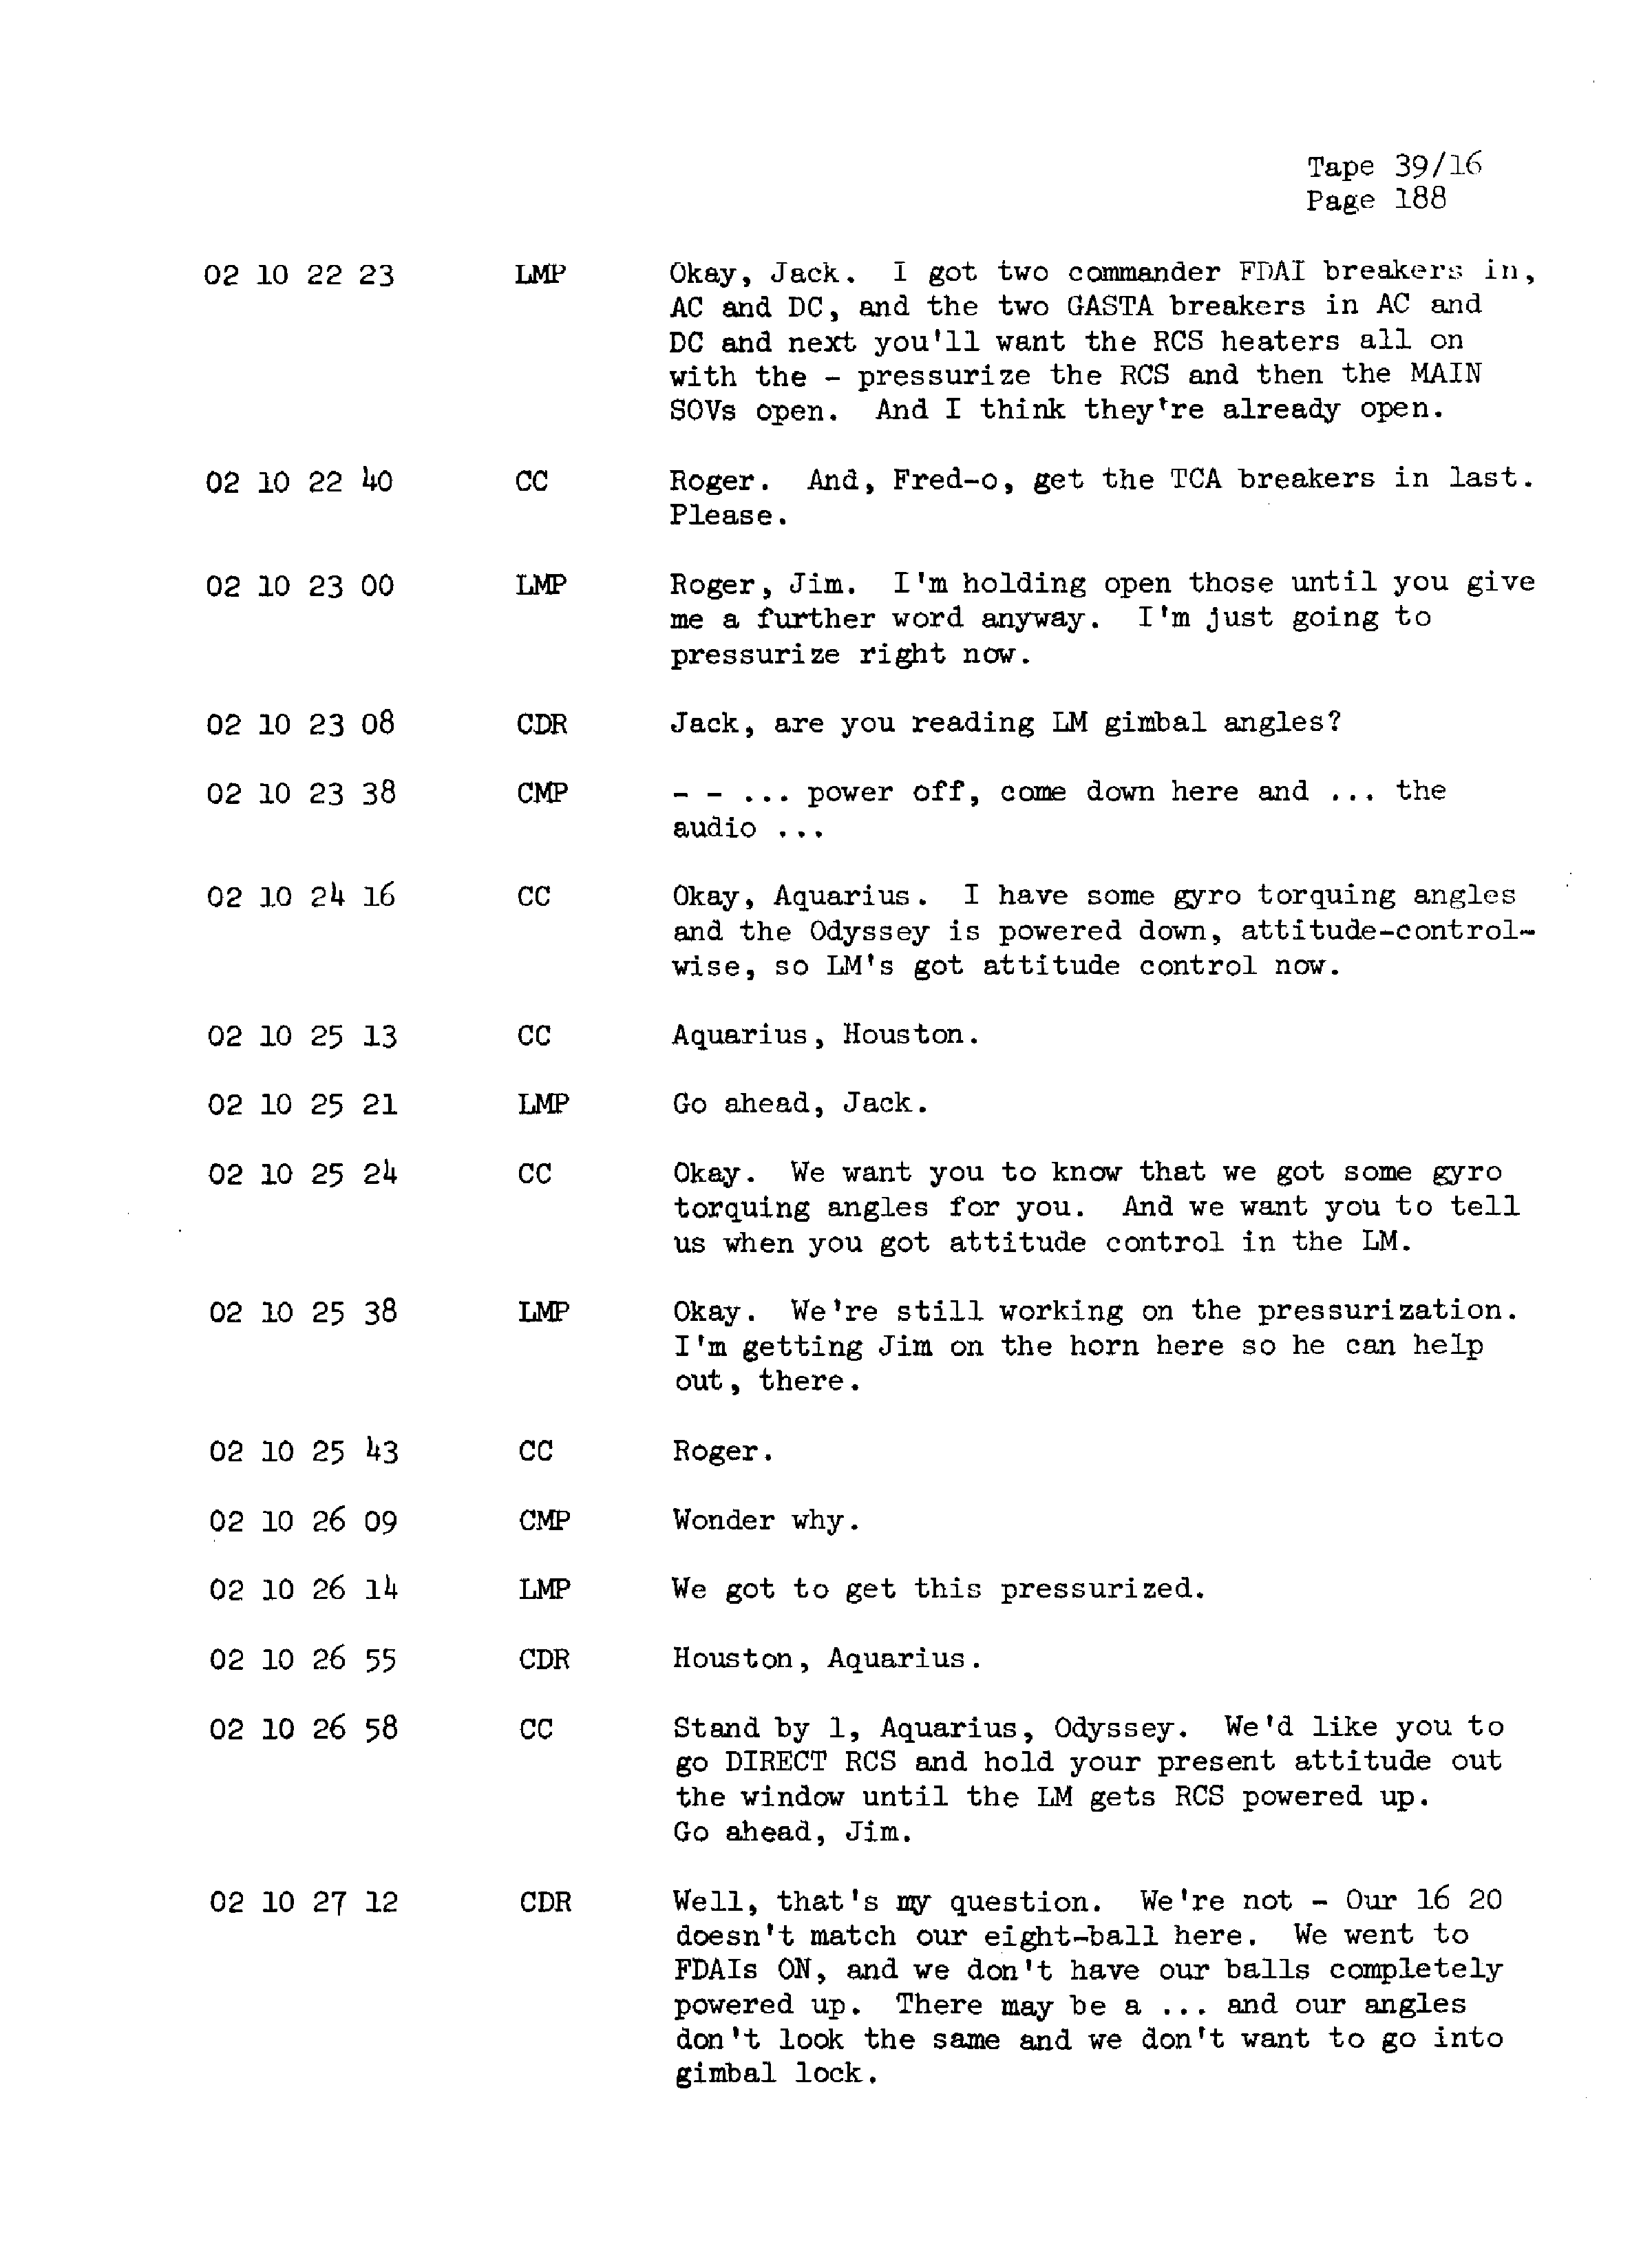 Page 195 of Apollo 13’s original transcript